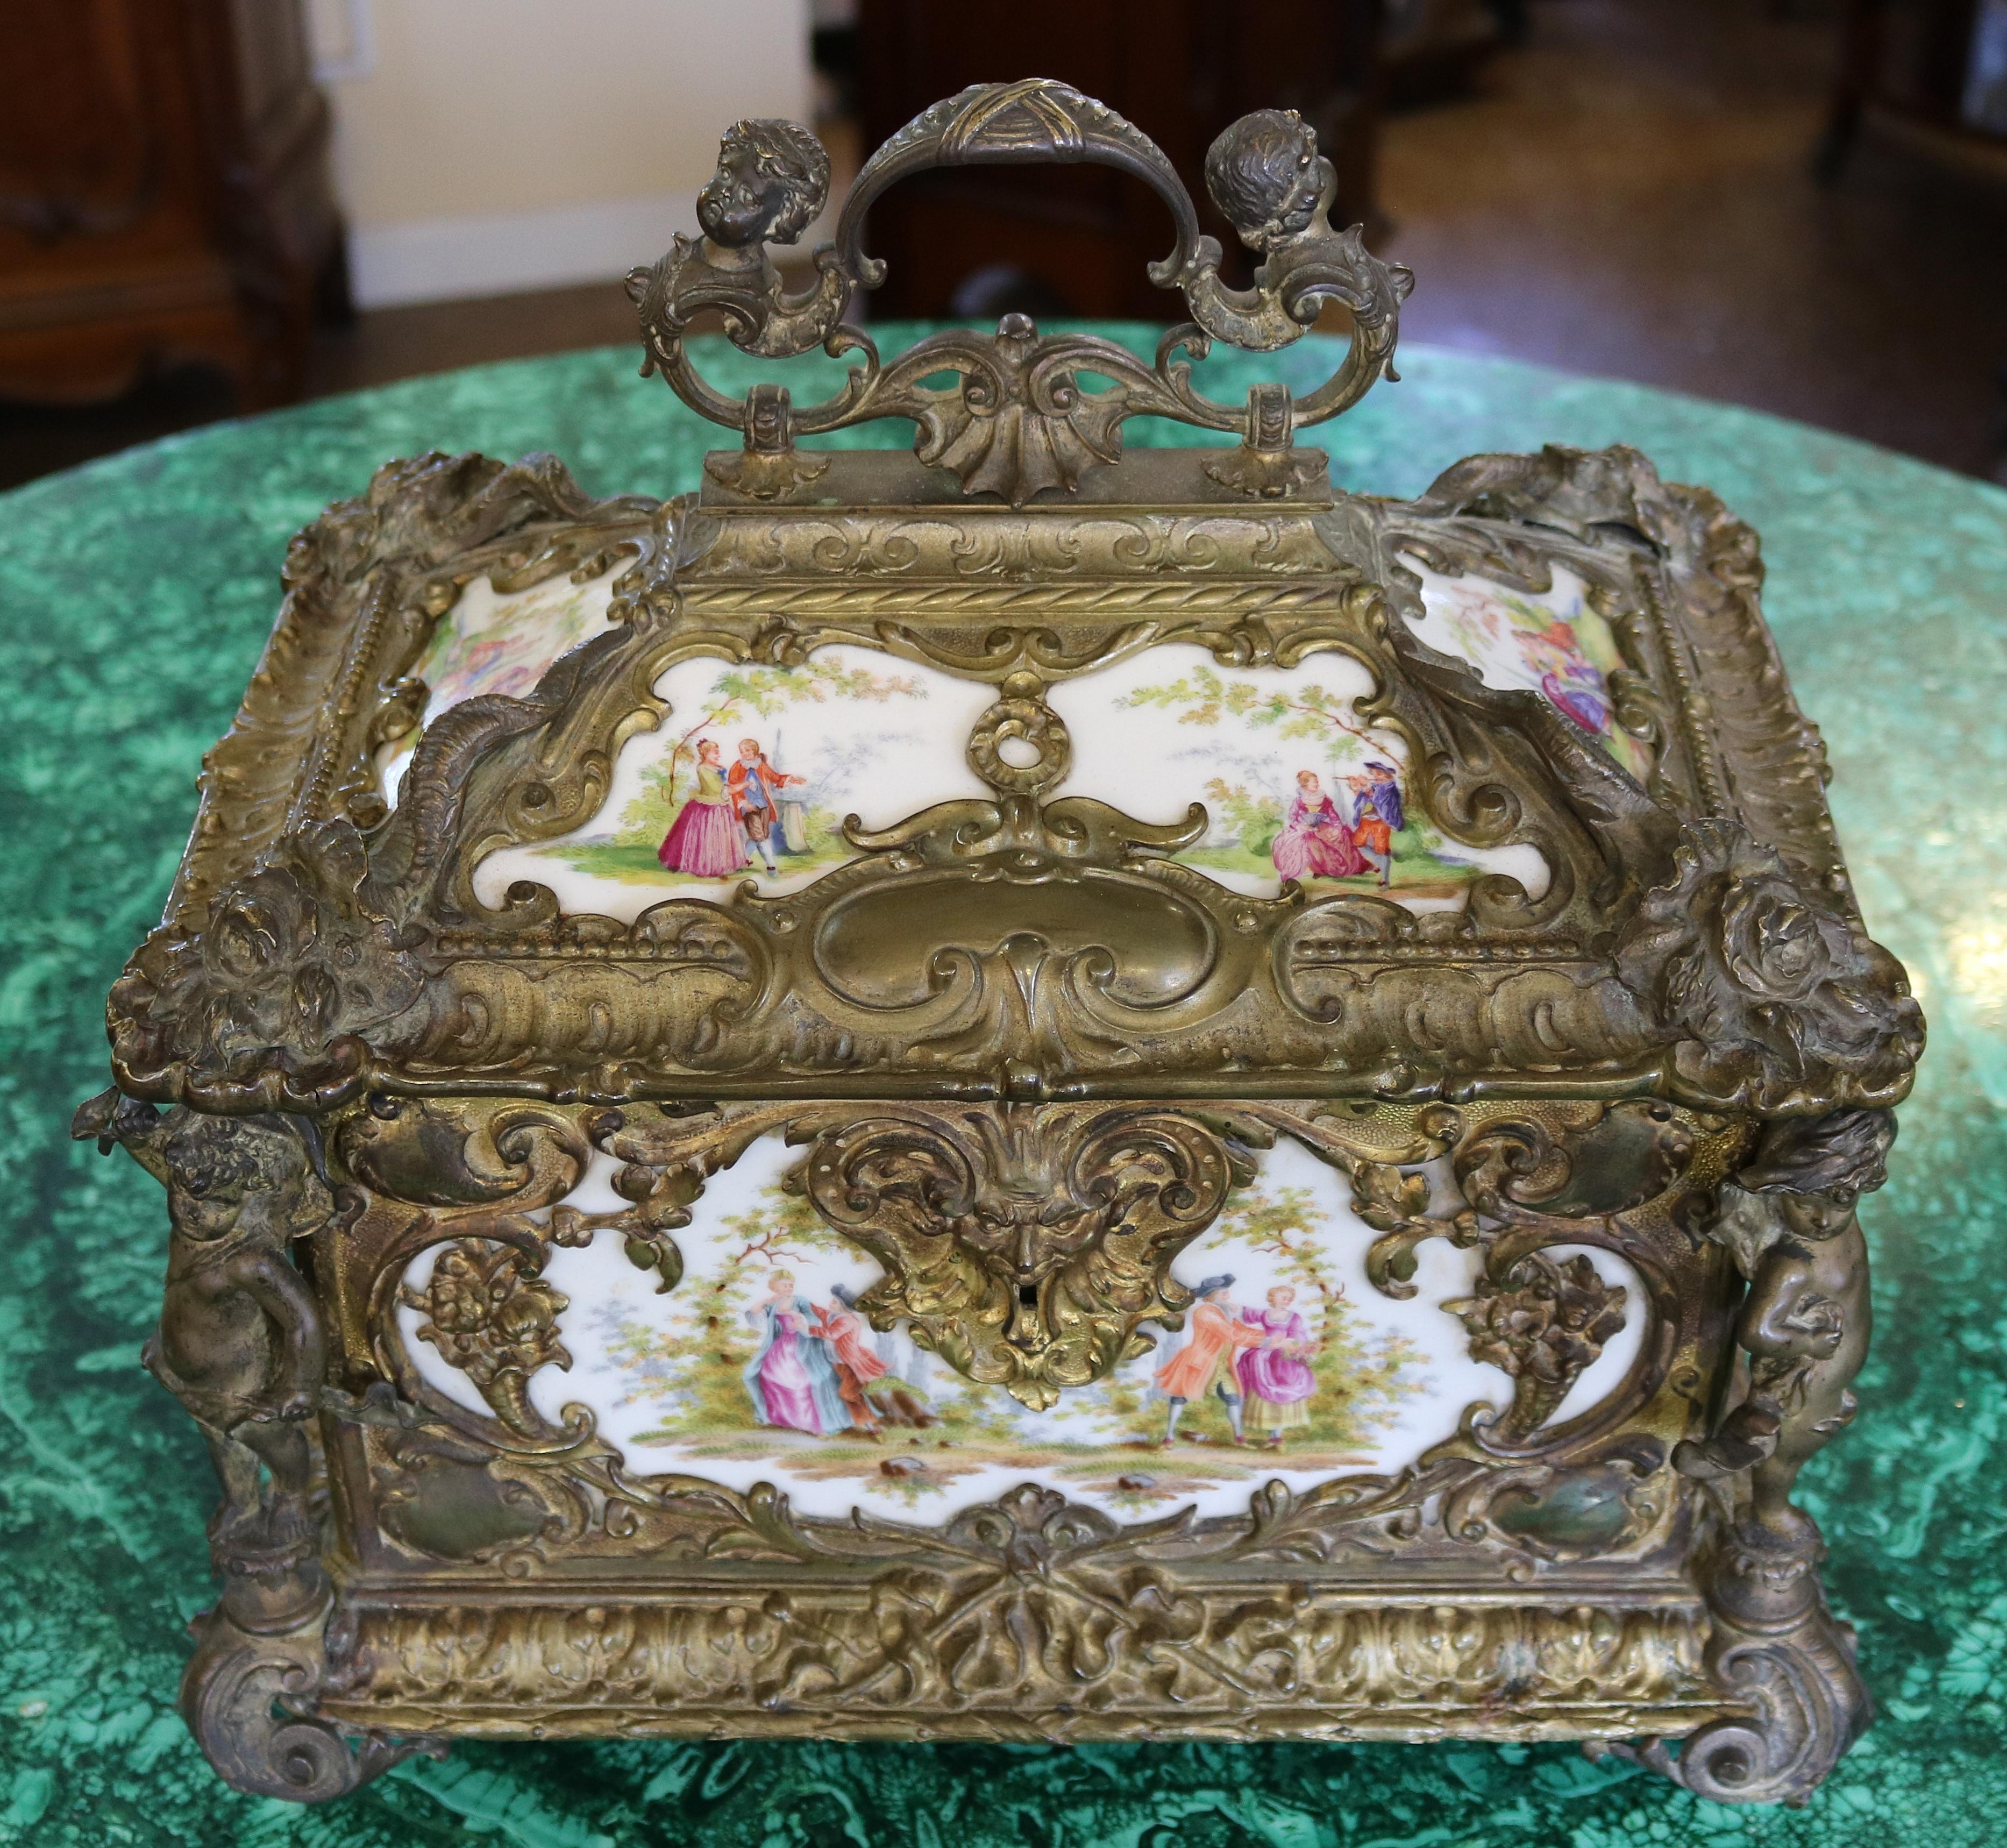 Remarquable grande boîte à bijoux en bronze et porcelaine du 19ème siècle

Dimensions : 14